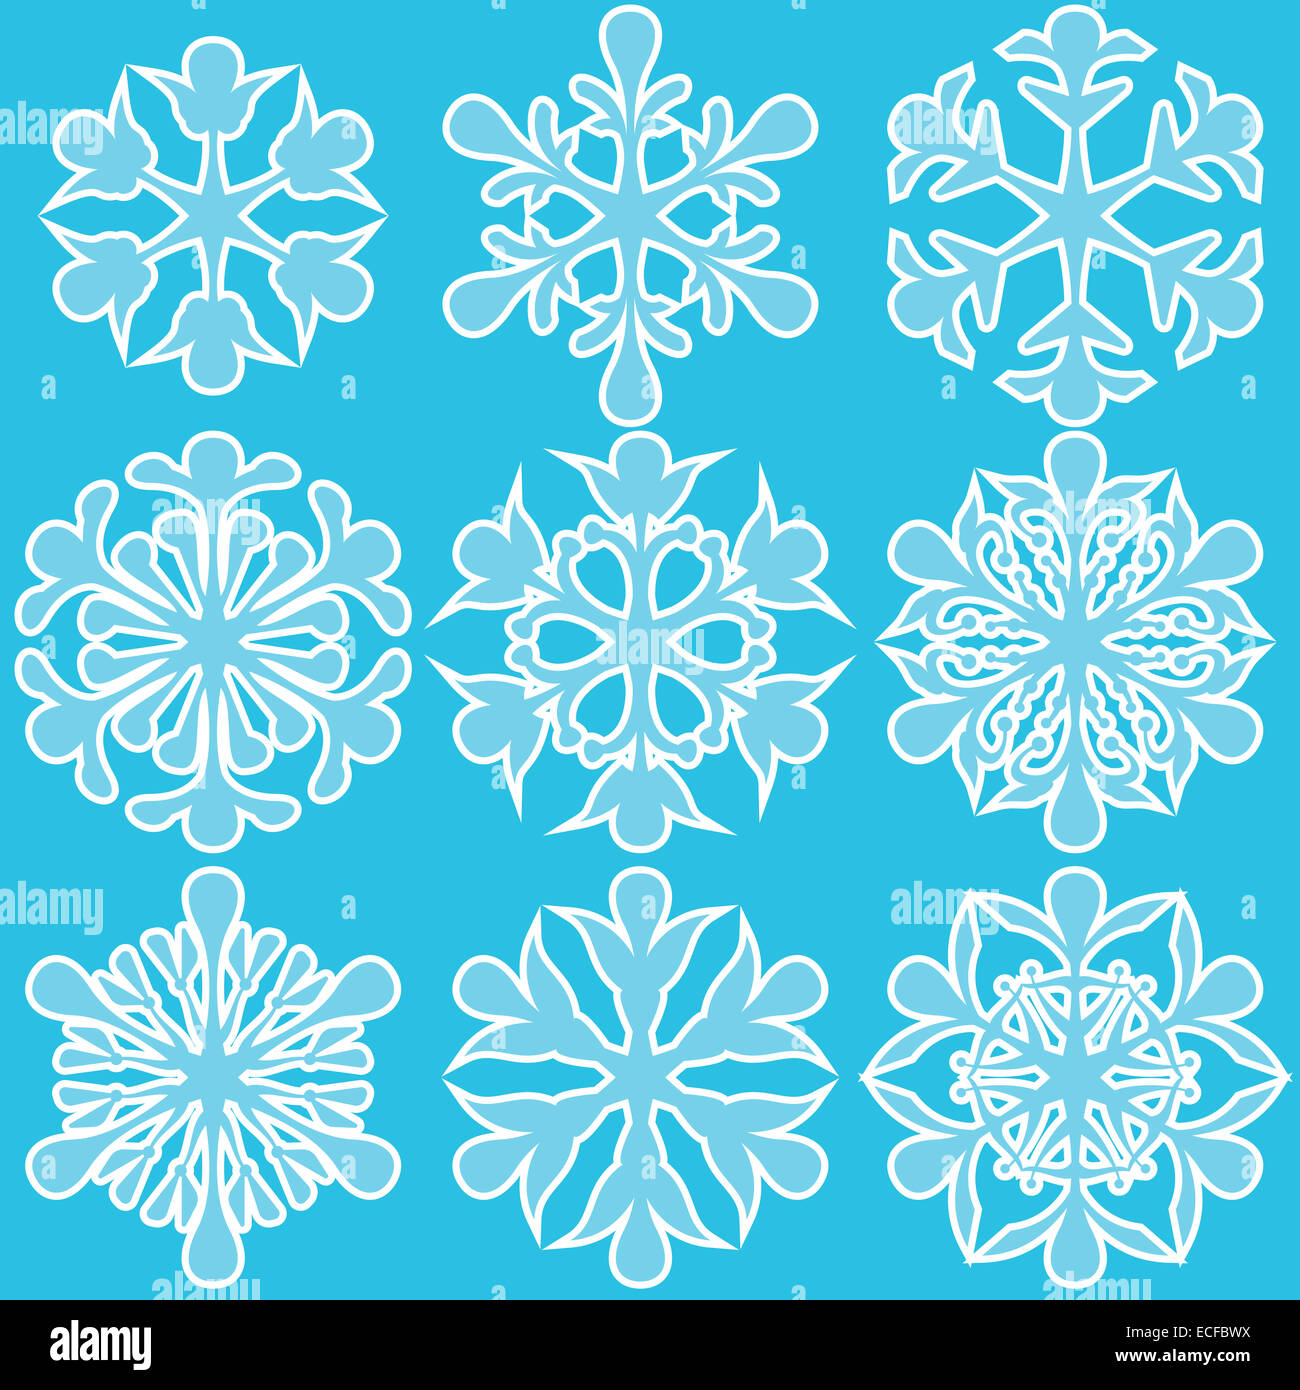 Vektor-Illustration von geometrischen blaue Schneeflocken set Stockfoto